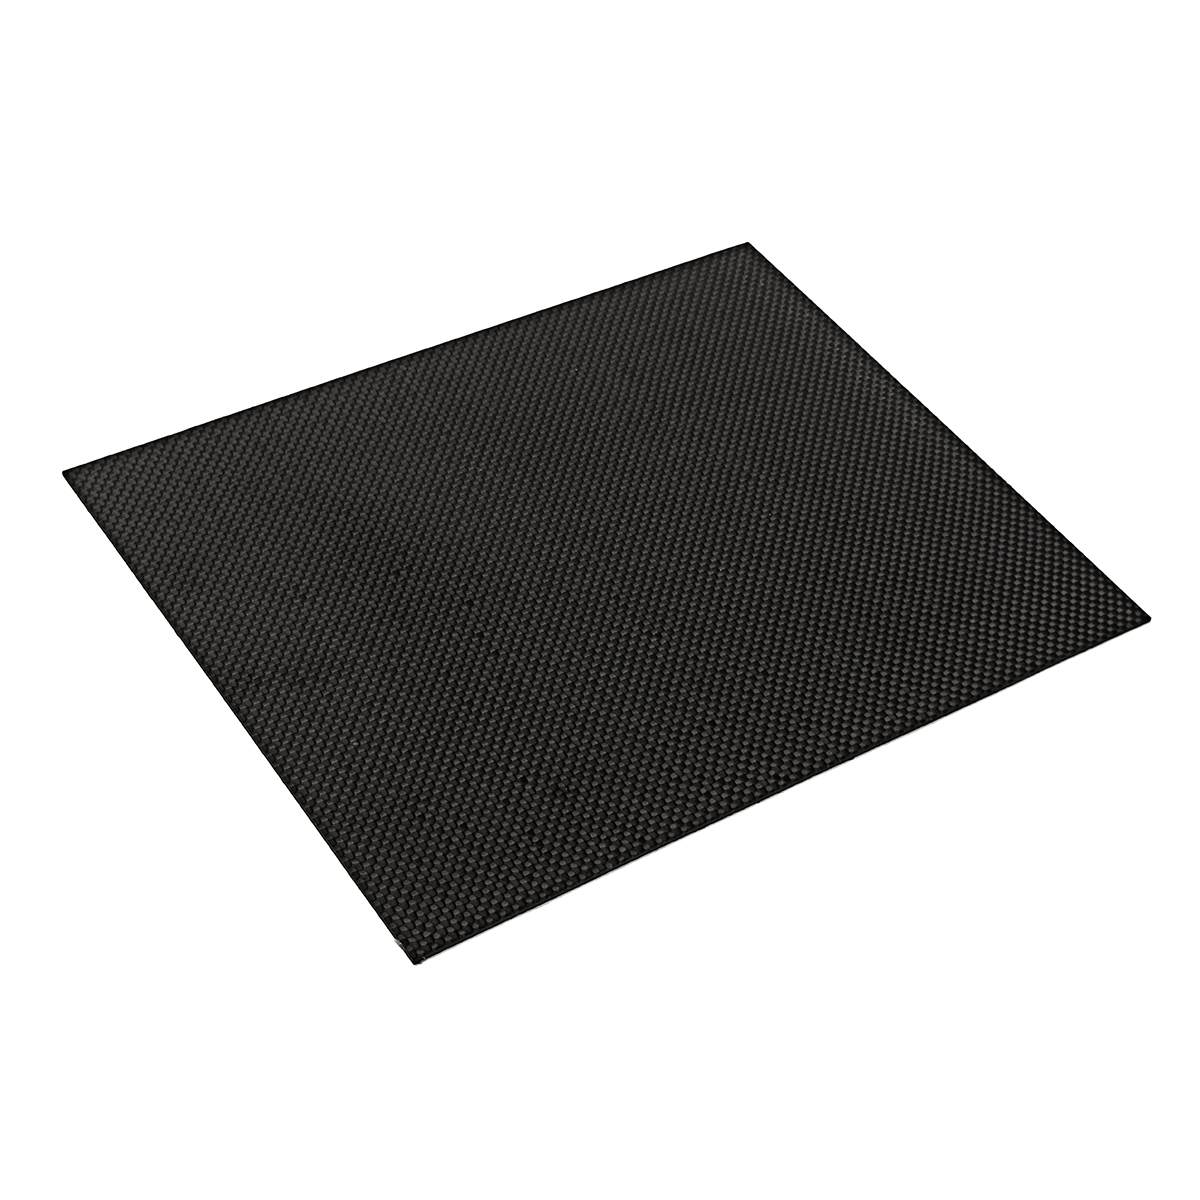 200x250x05-2mm-Plain-Weave-3K-Carbon-Fiber-Plate-Panel-Sheet-Tabby-Matt-Surface-Board-1332224-8